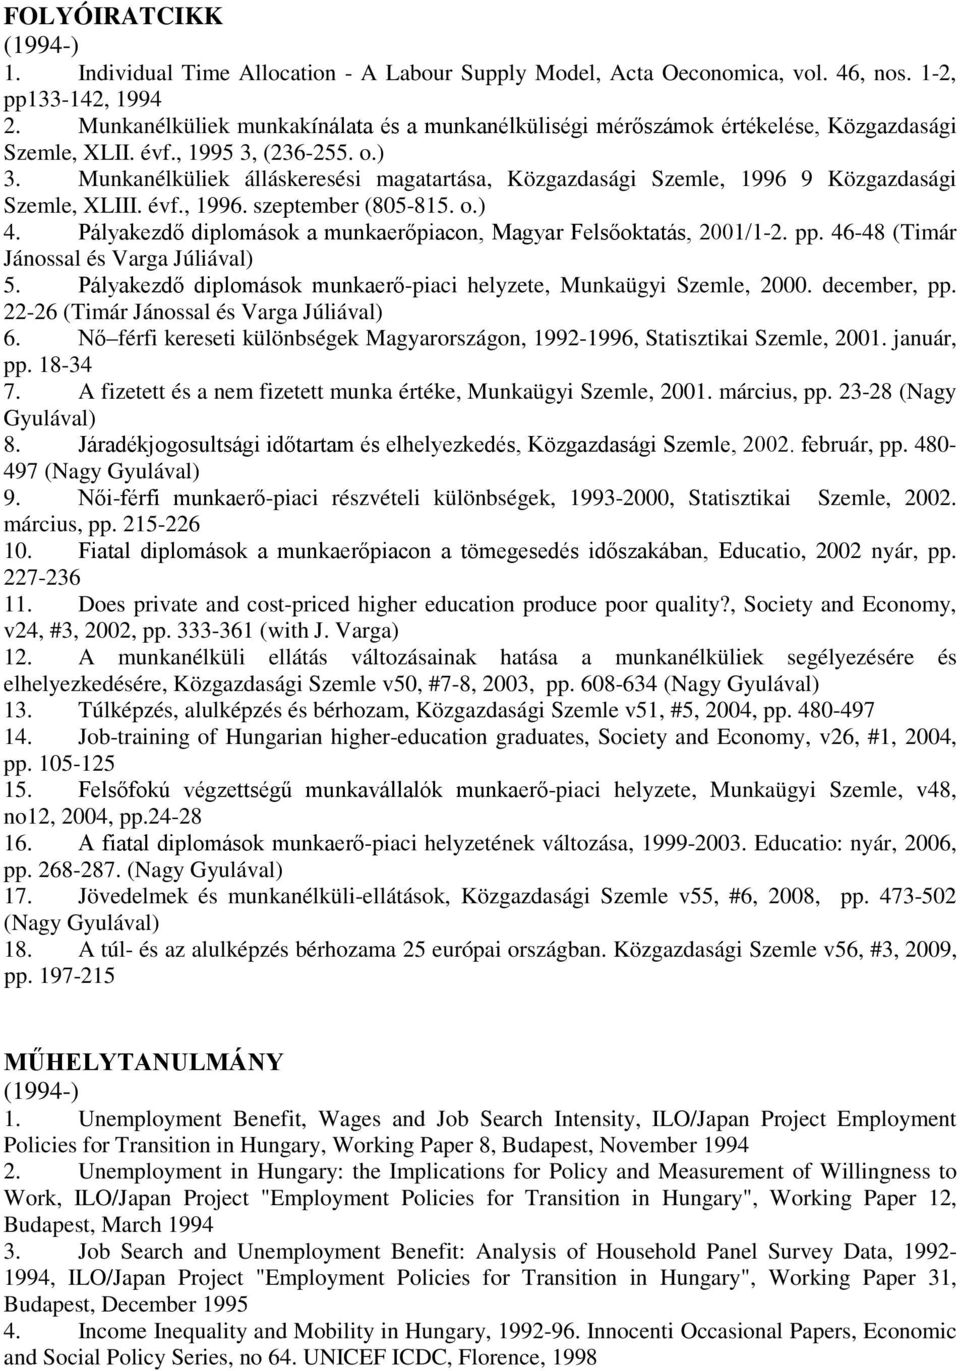 Munkanélküliek álláskeresési magatartása, Közgazdasági Szemle, 1996 9 Közgazdasági Szemle, XLIII. évf., 1996. szeptember (805-815. o.) 4.